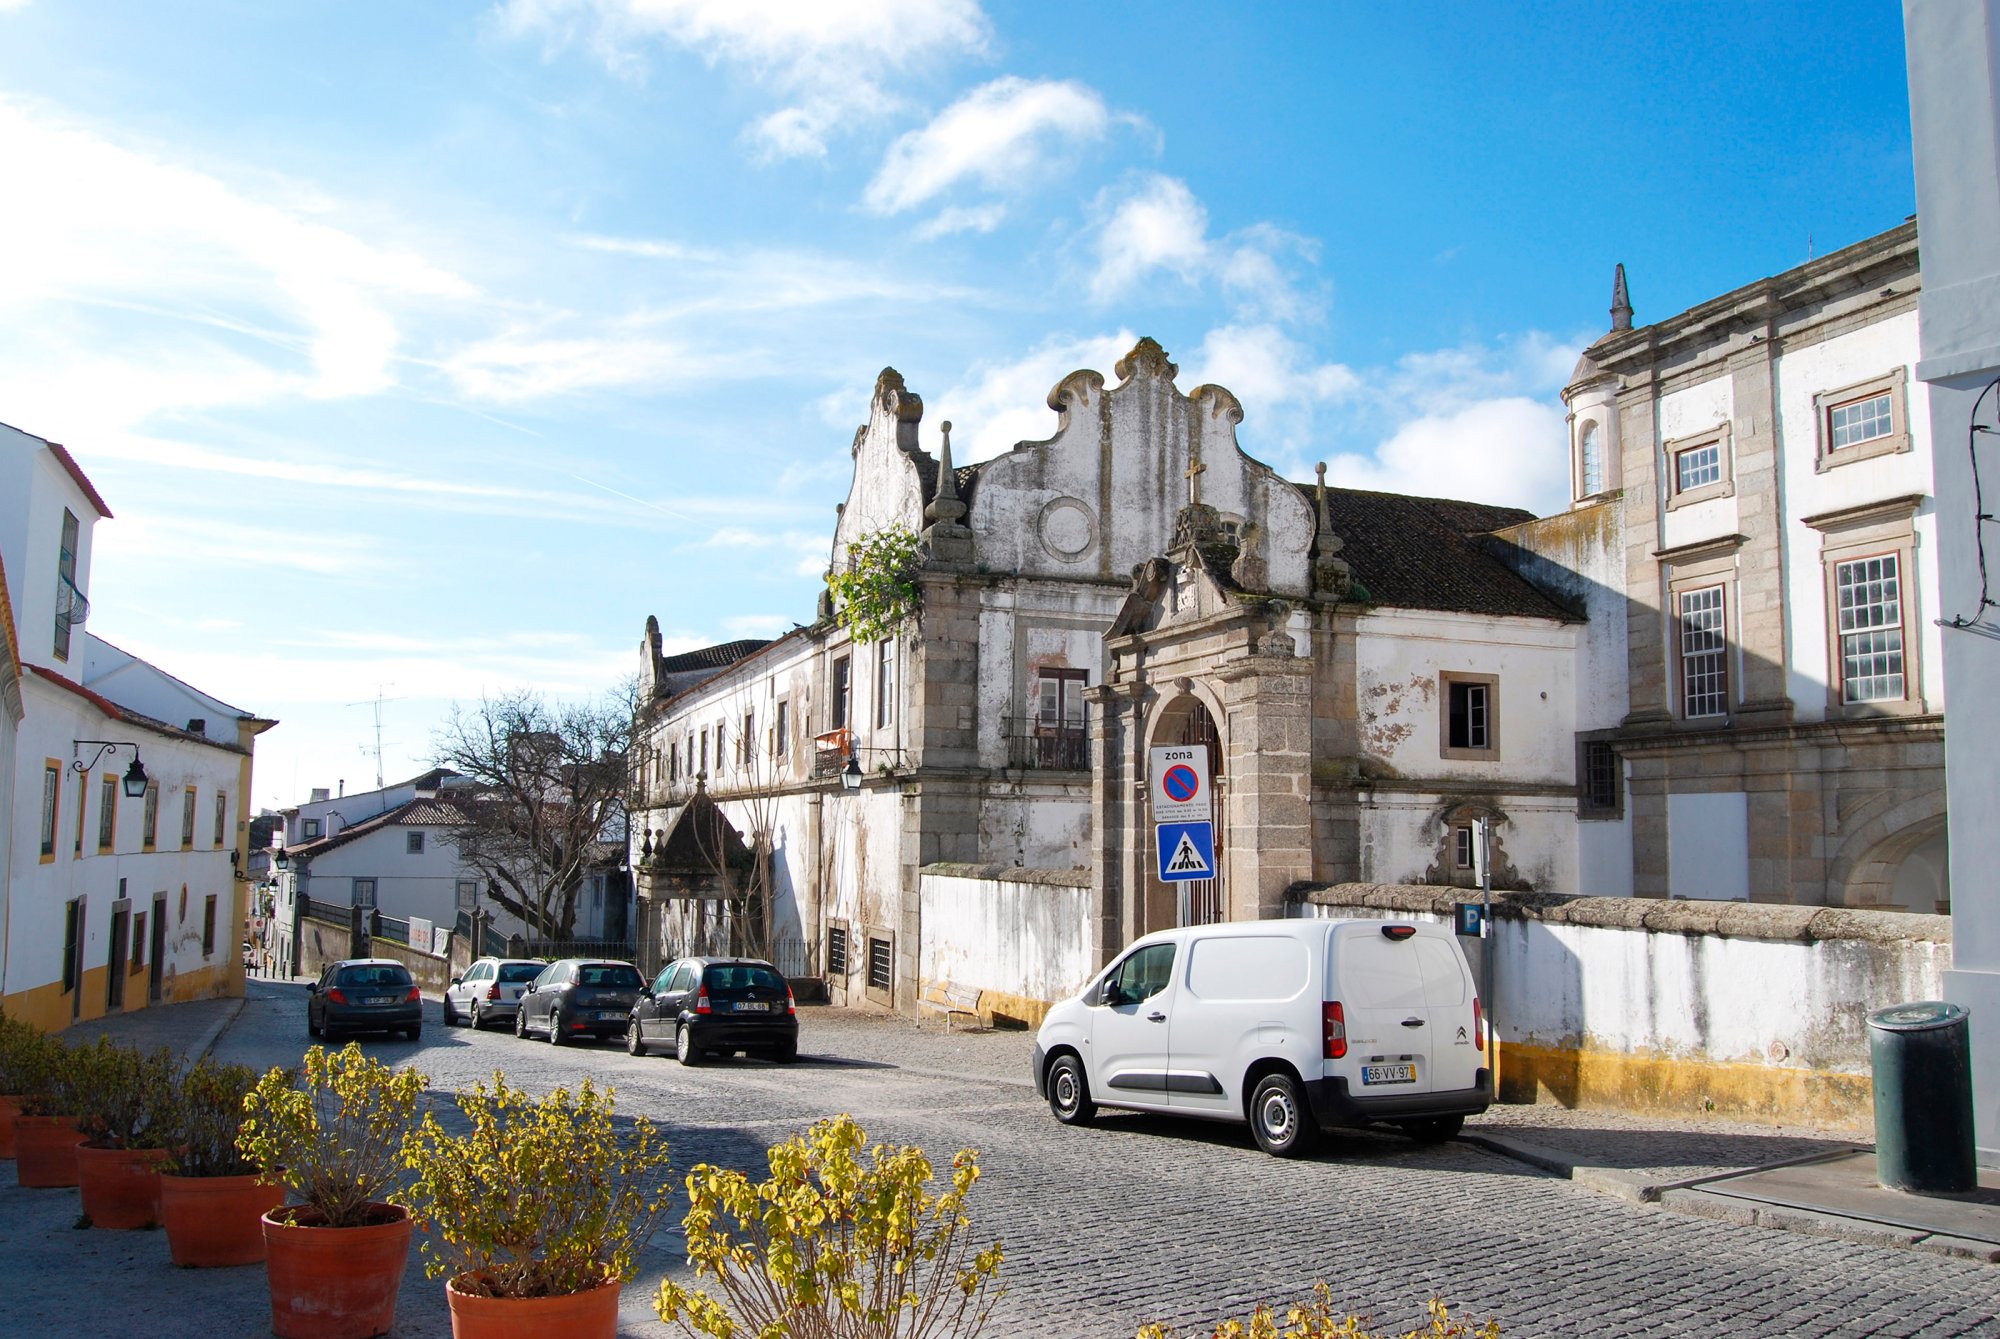 Pavilhão da Construção local : un centre de valorisation du patrimoine architectural à Évora pour maintenir et transmettre la culture constructive de l'Alentejo - 9